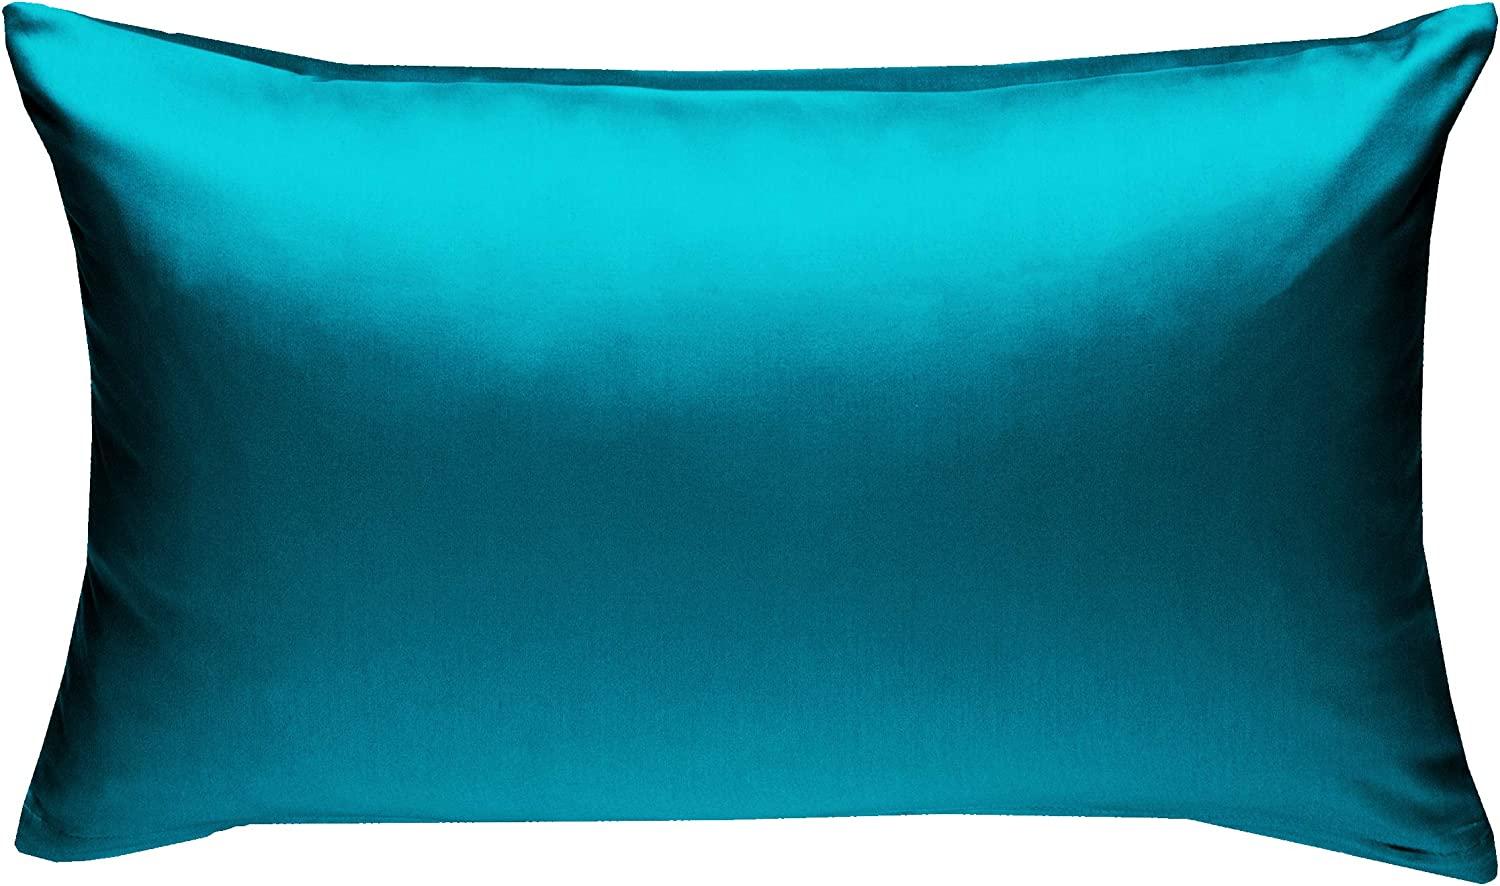 Bettwaesche-mit-Stil Mako-Satin / Baumwollsatin Bettwäsche uni / einfarbig petrol blau Kissenbezug 40x60 cm Bild 1